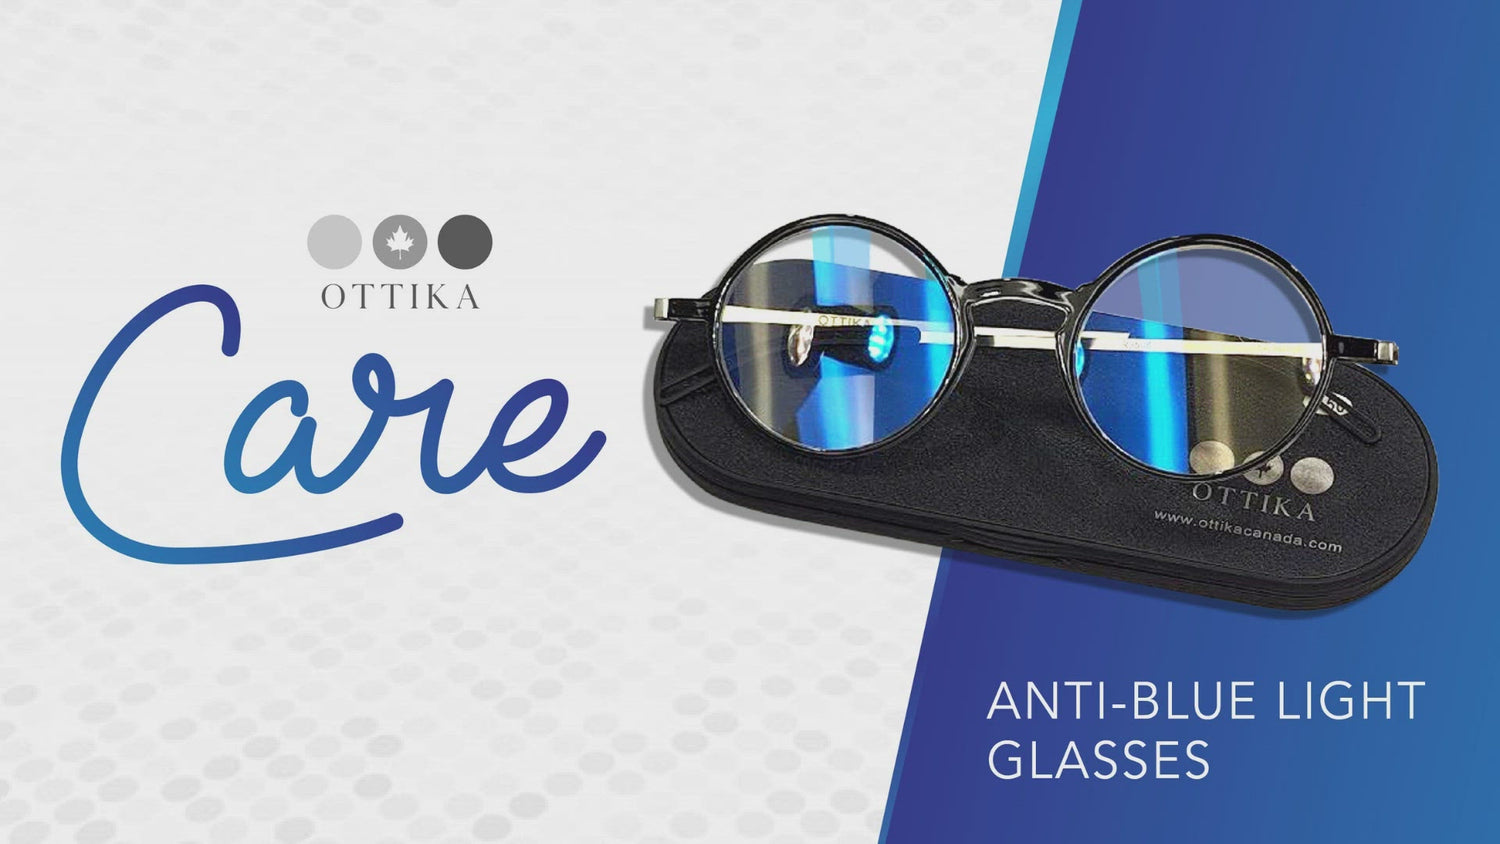 Blue Light Blocking Reading Glasses | Progressive Lenses (JC041)